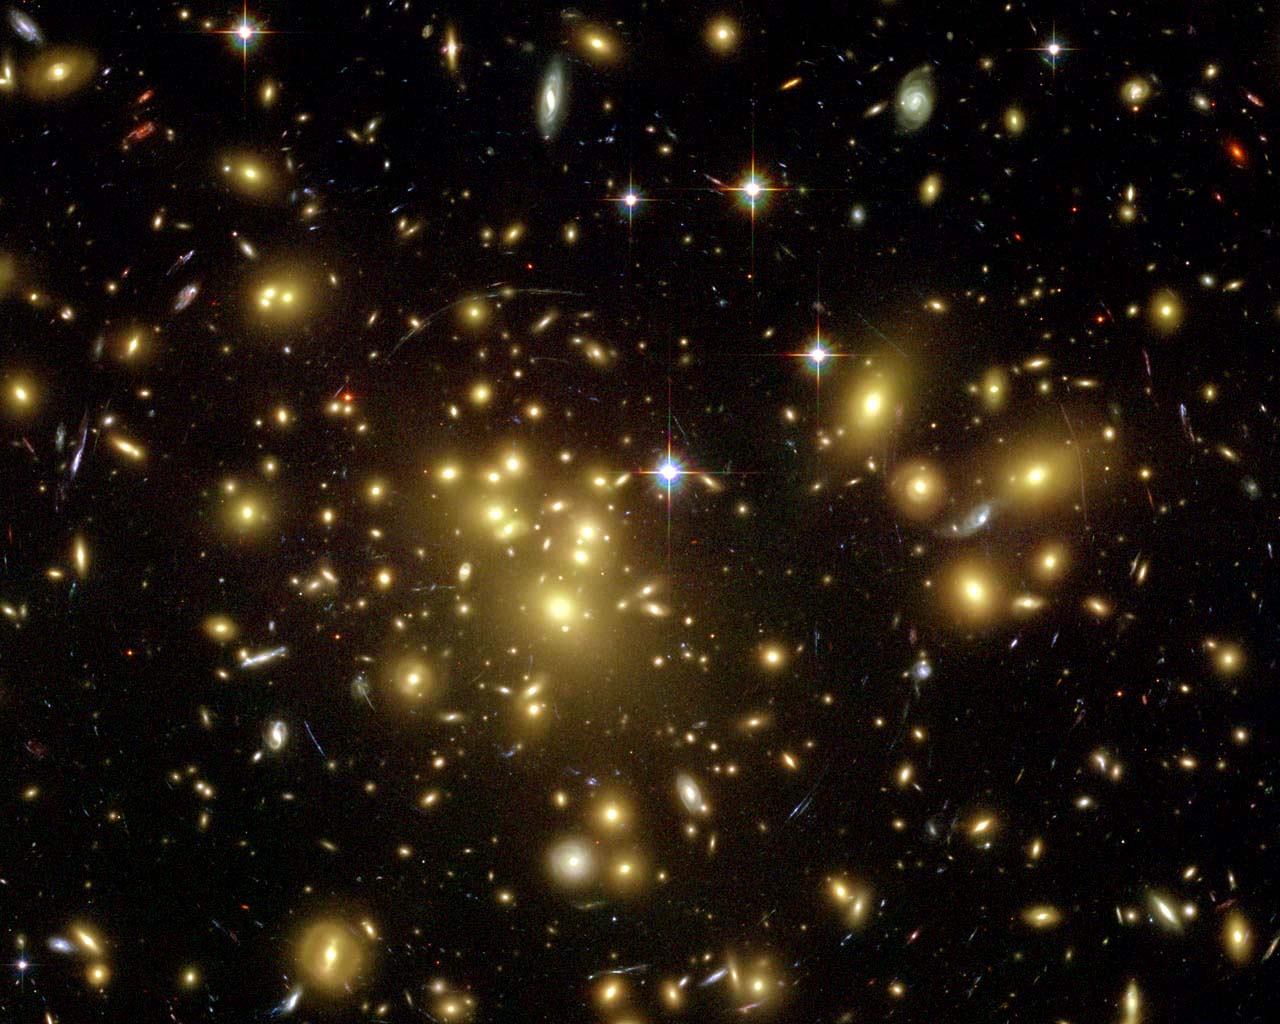 Abell 1689 est un amas de galaxies dans la constellation de la Vierge. C'est l'un des plus grands amas et un des plus massifs avec effet de lentille gravitationnelle, trahissant la présence de matière noire. Il est distant de 2,2 milliards d'années-lumière et contient environ 1.000 galaxies. © Nasa